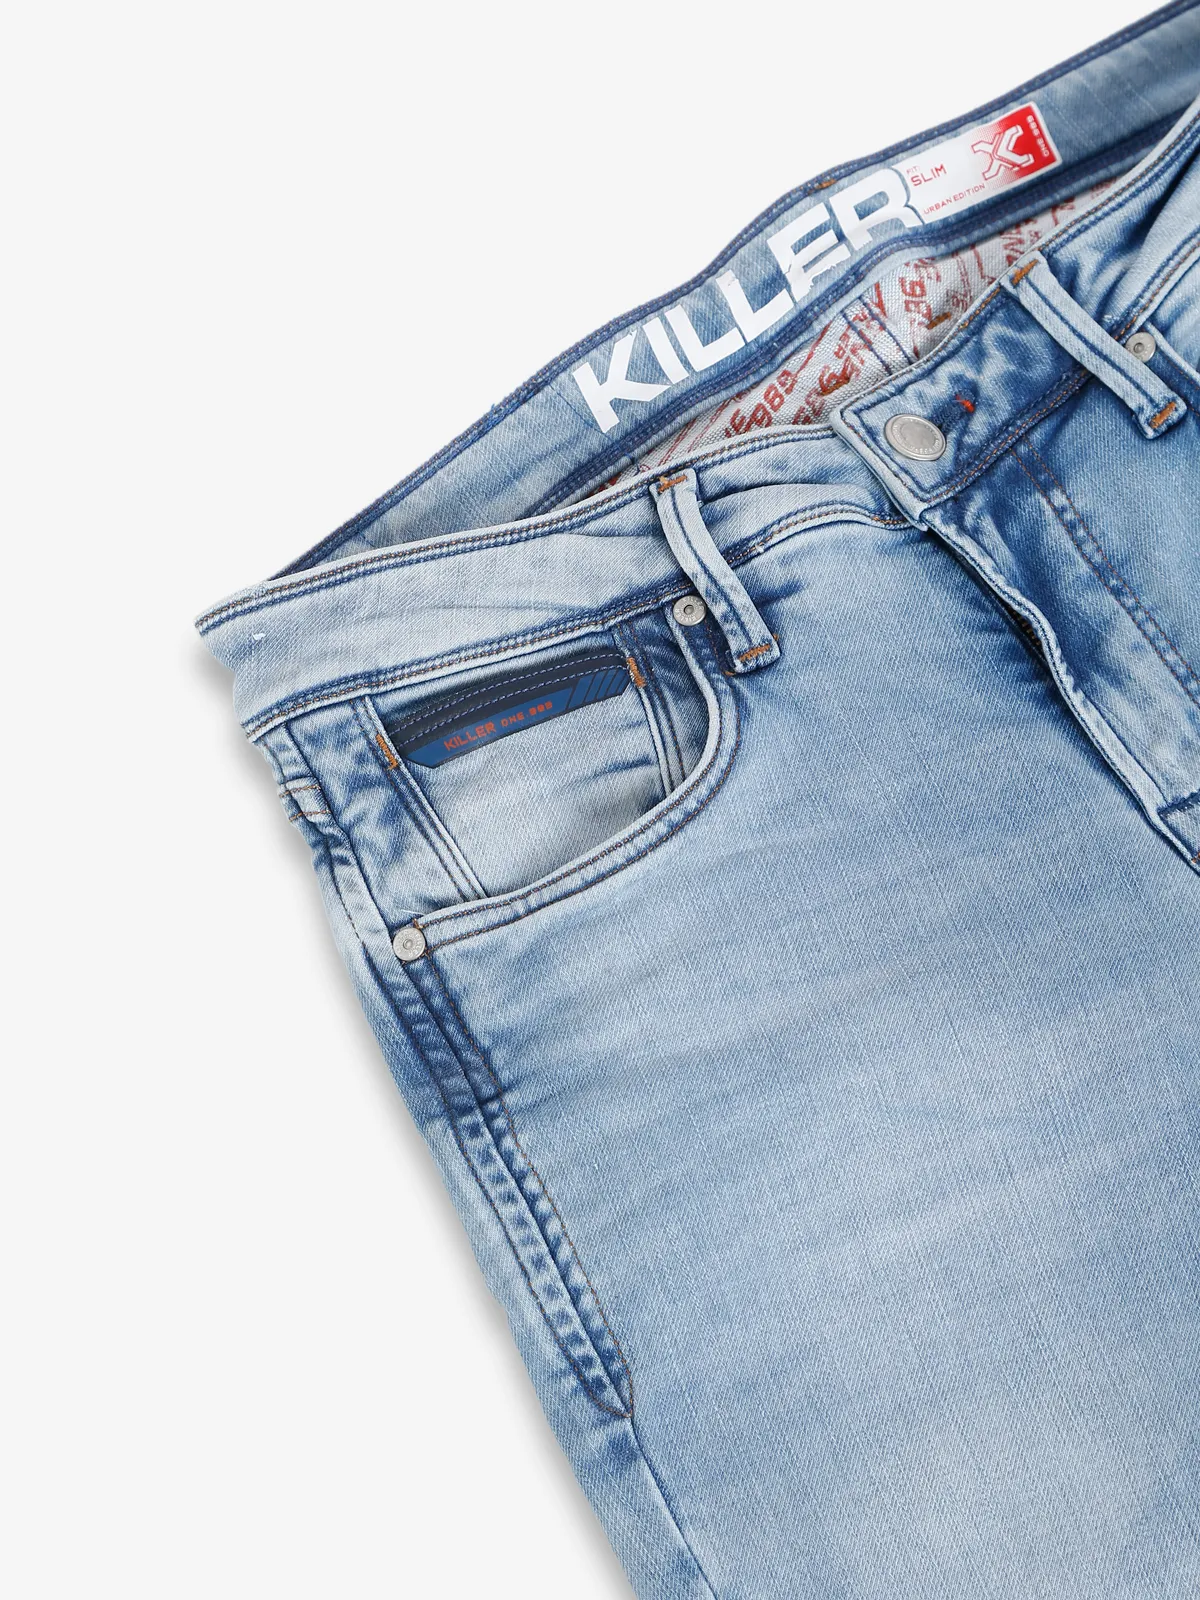 Killer ice blue washed slim fit jeans